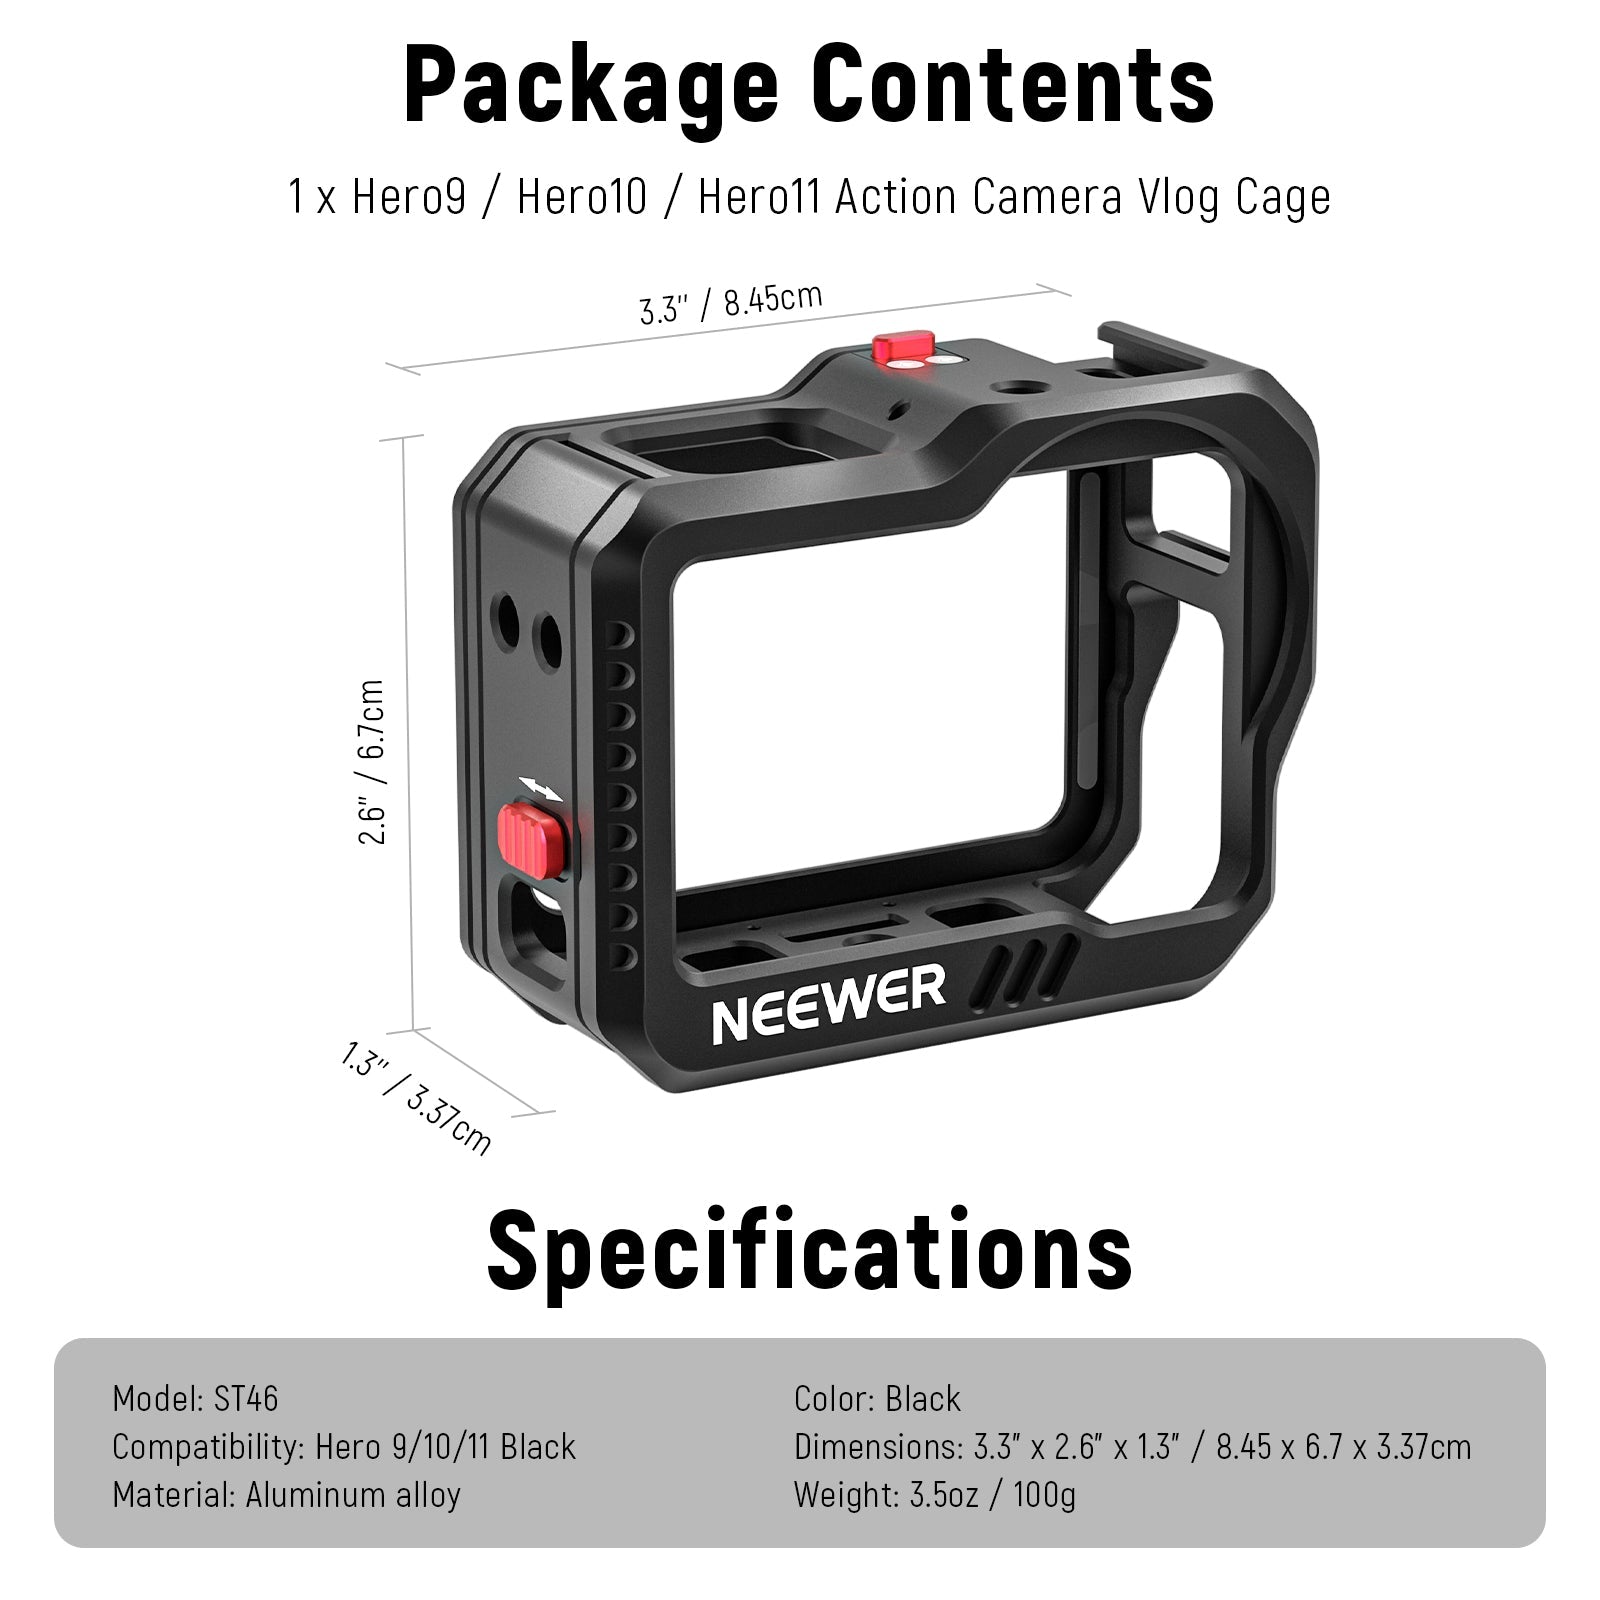 Cadre de protection en aluminium CNC pour GoPro Hero 9, étui de protection  noir pour GoPro Hero 9, accessoires de caméra d'action